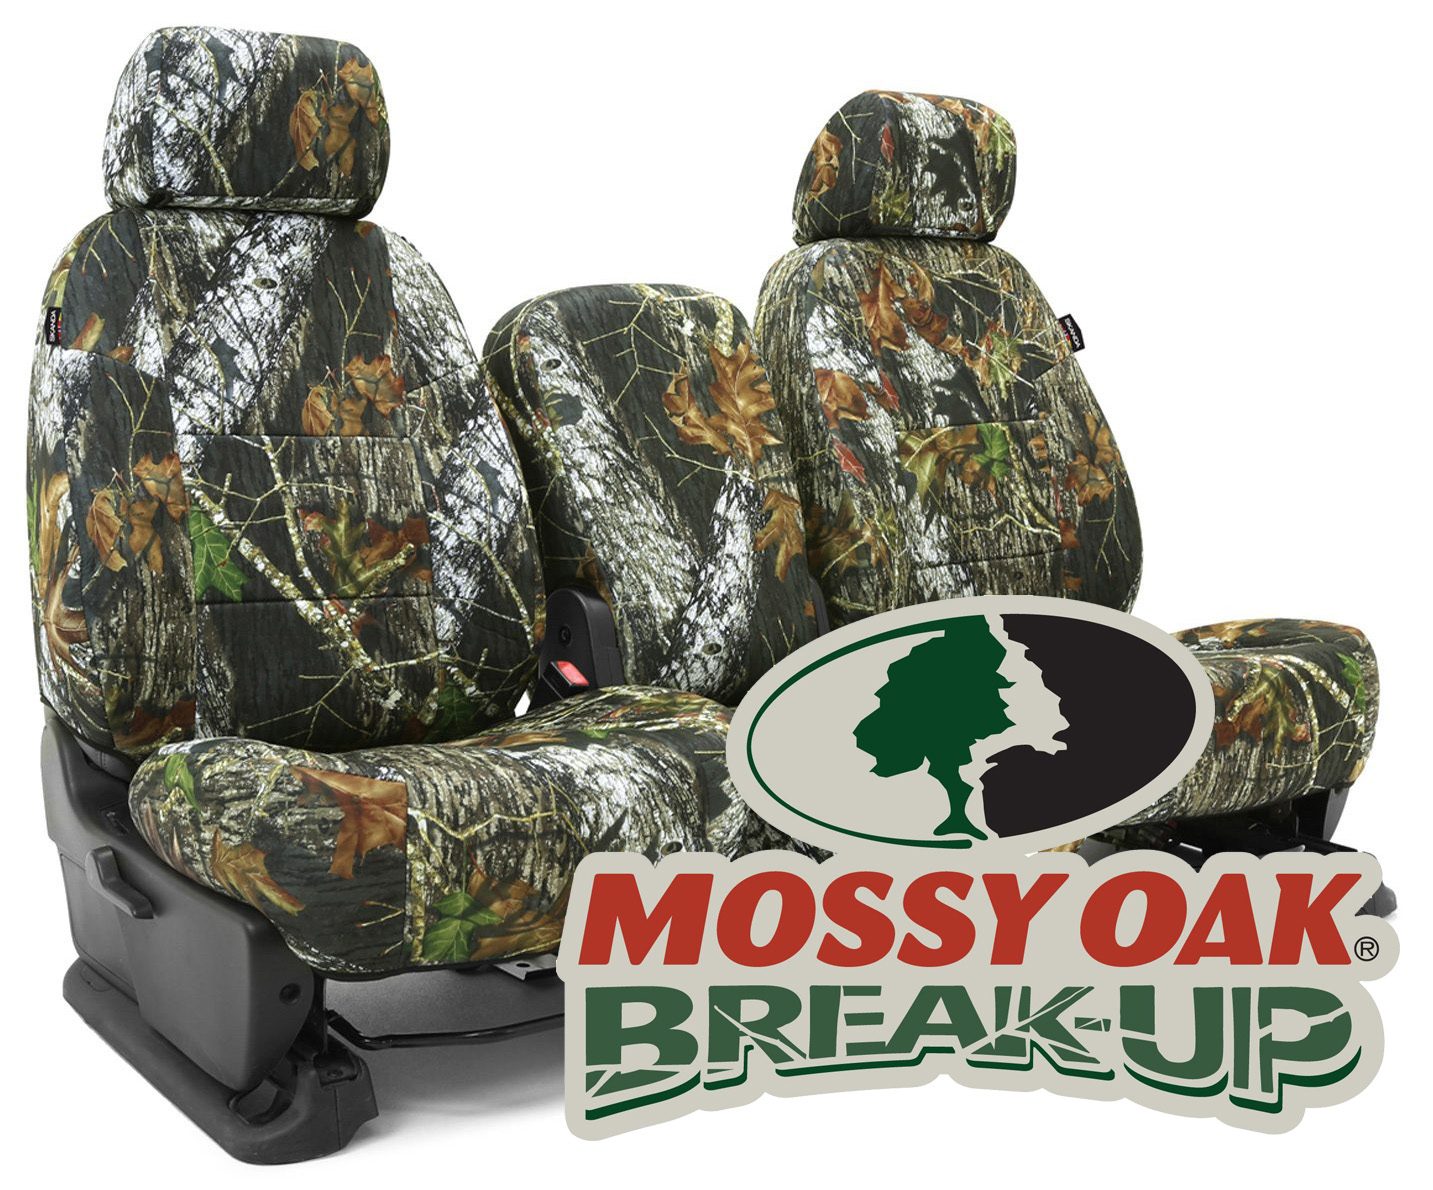 Mossy Oak Break-Up seat covers